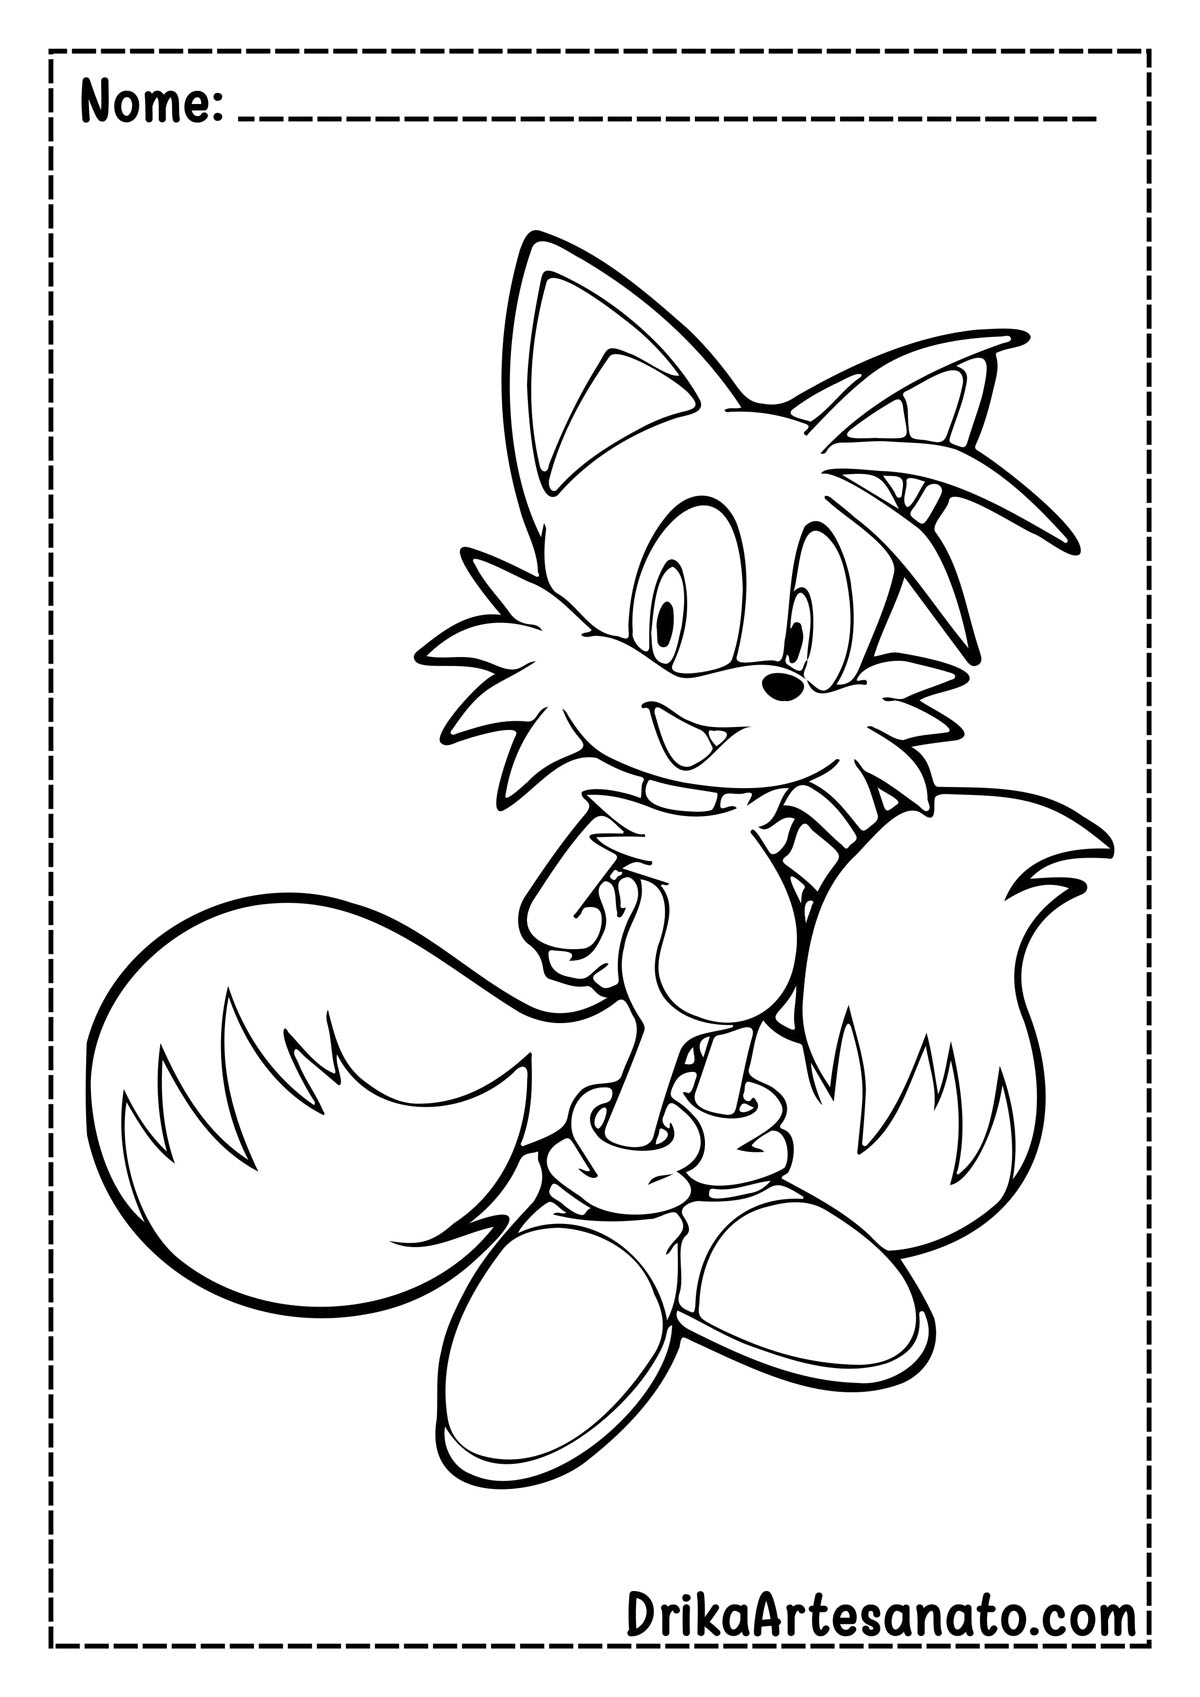 Desenho do Tails do Sonic para Colorir